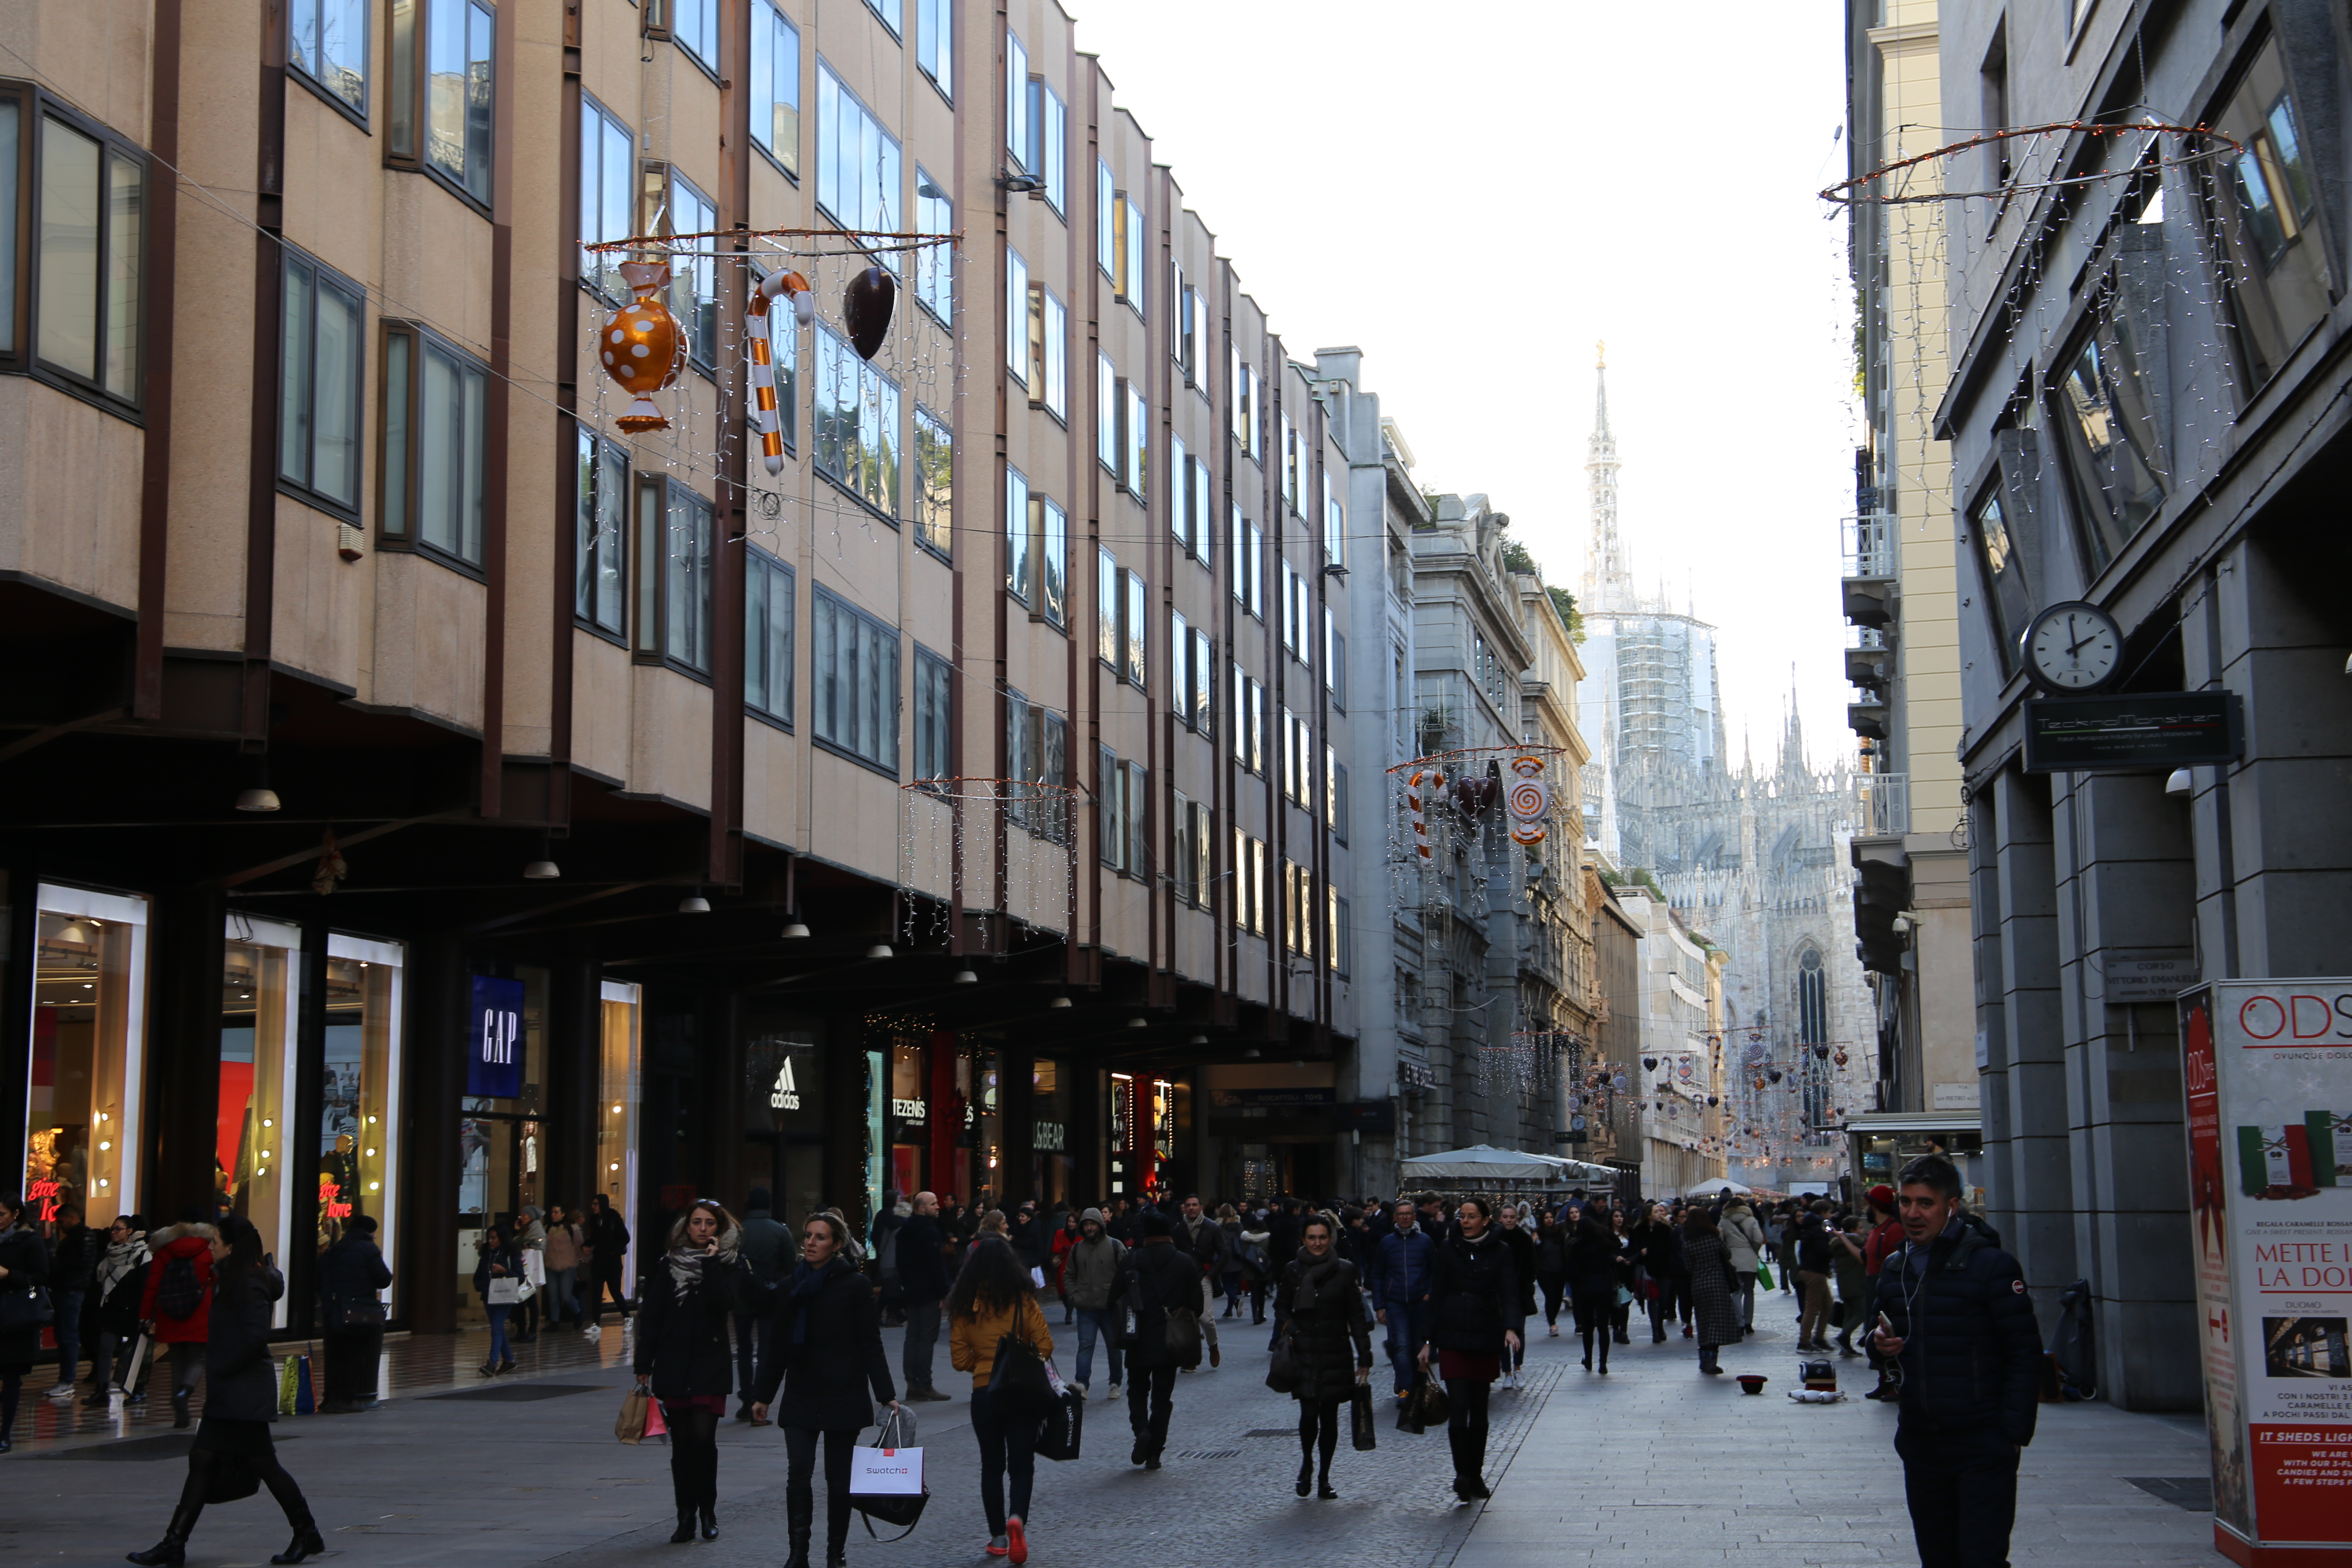 Corso_Vittorio_Emanuele_II_Mailand_Shoppen_Einkaufen_Weihnachten_Shopping_Guide